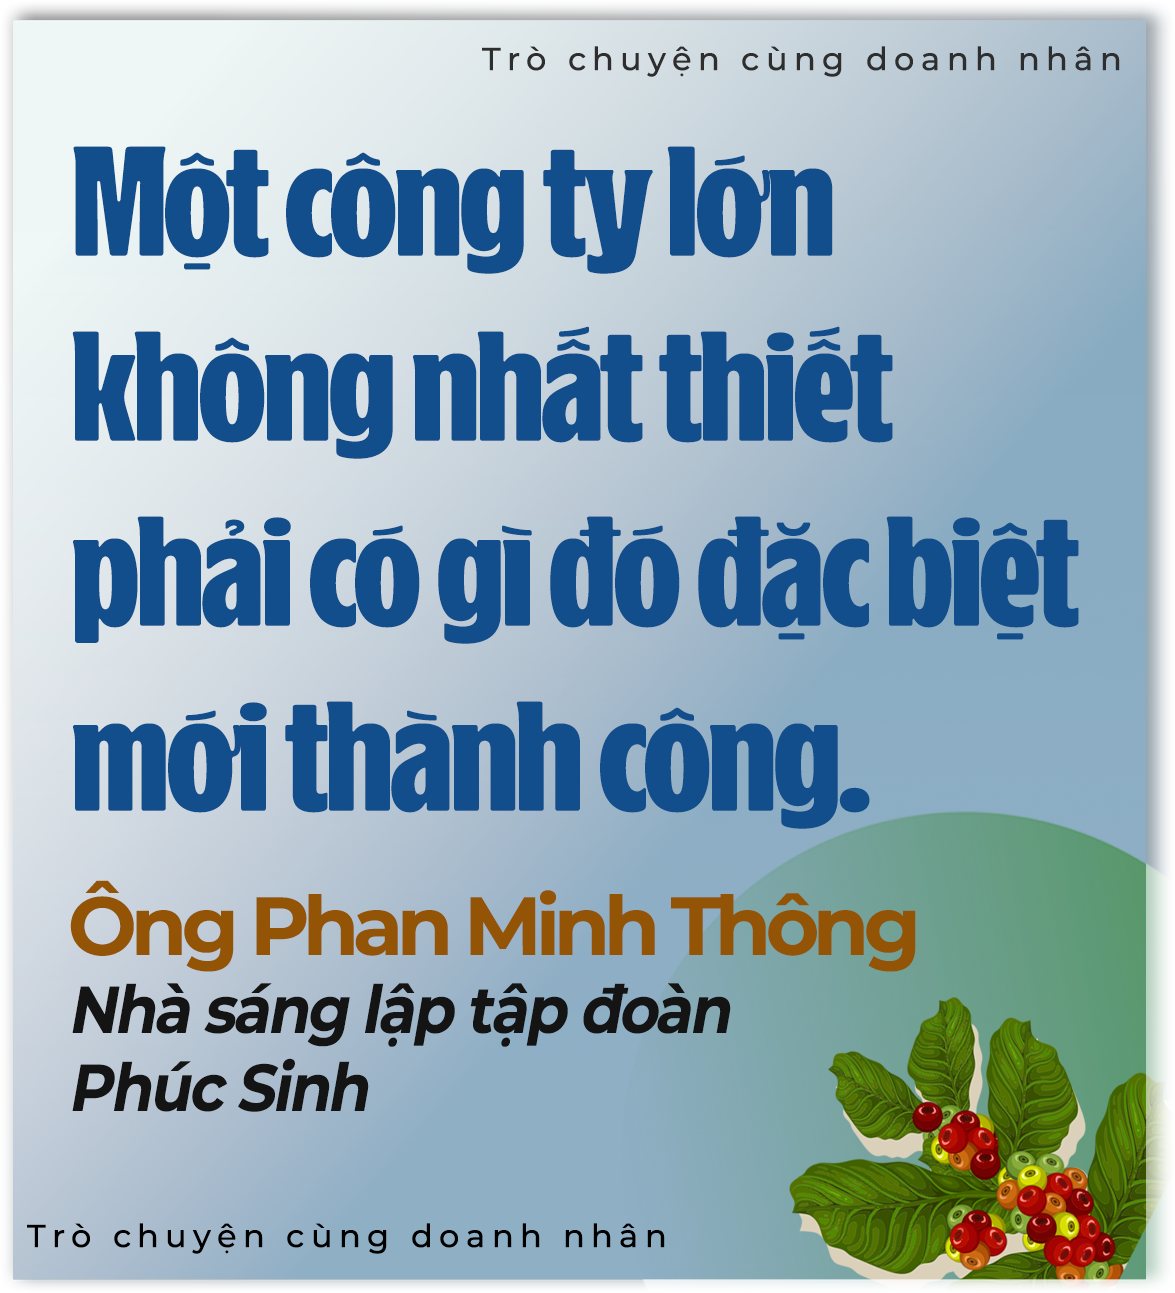 'Vua tiêu' Phan Minh Thông: Tôi nhìn thấy vàng ròng từ nông nghiệp- Ảnh 9.